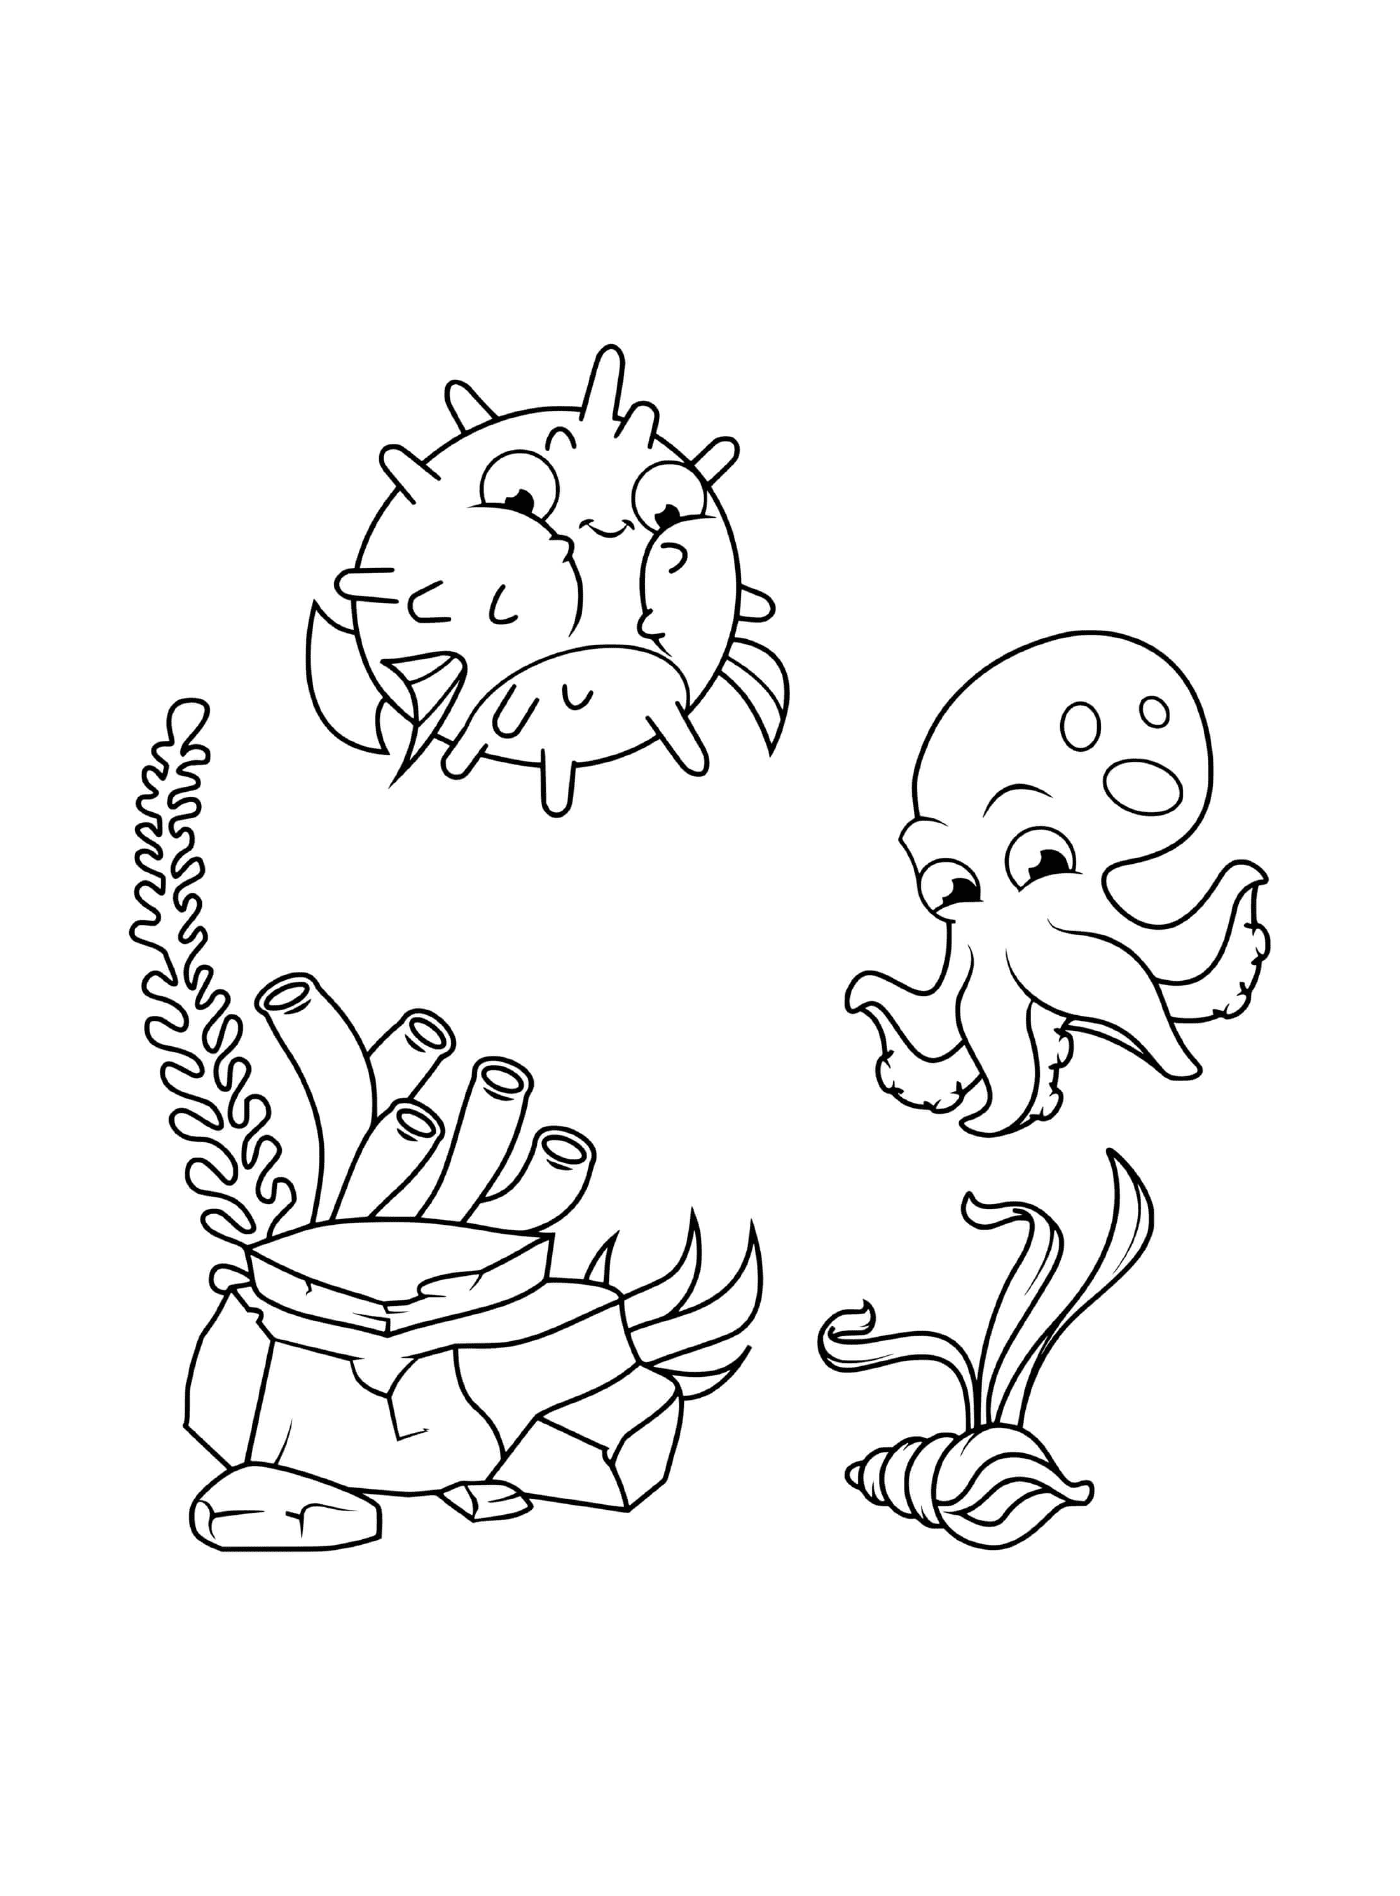  polpo, granchio, pesce e alghe disegnati insieme 